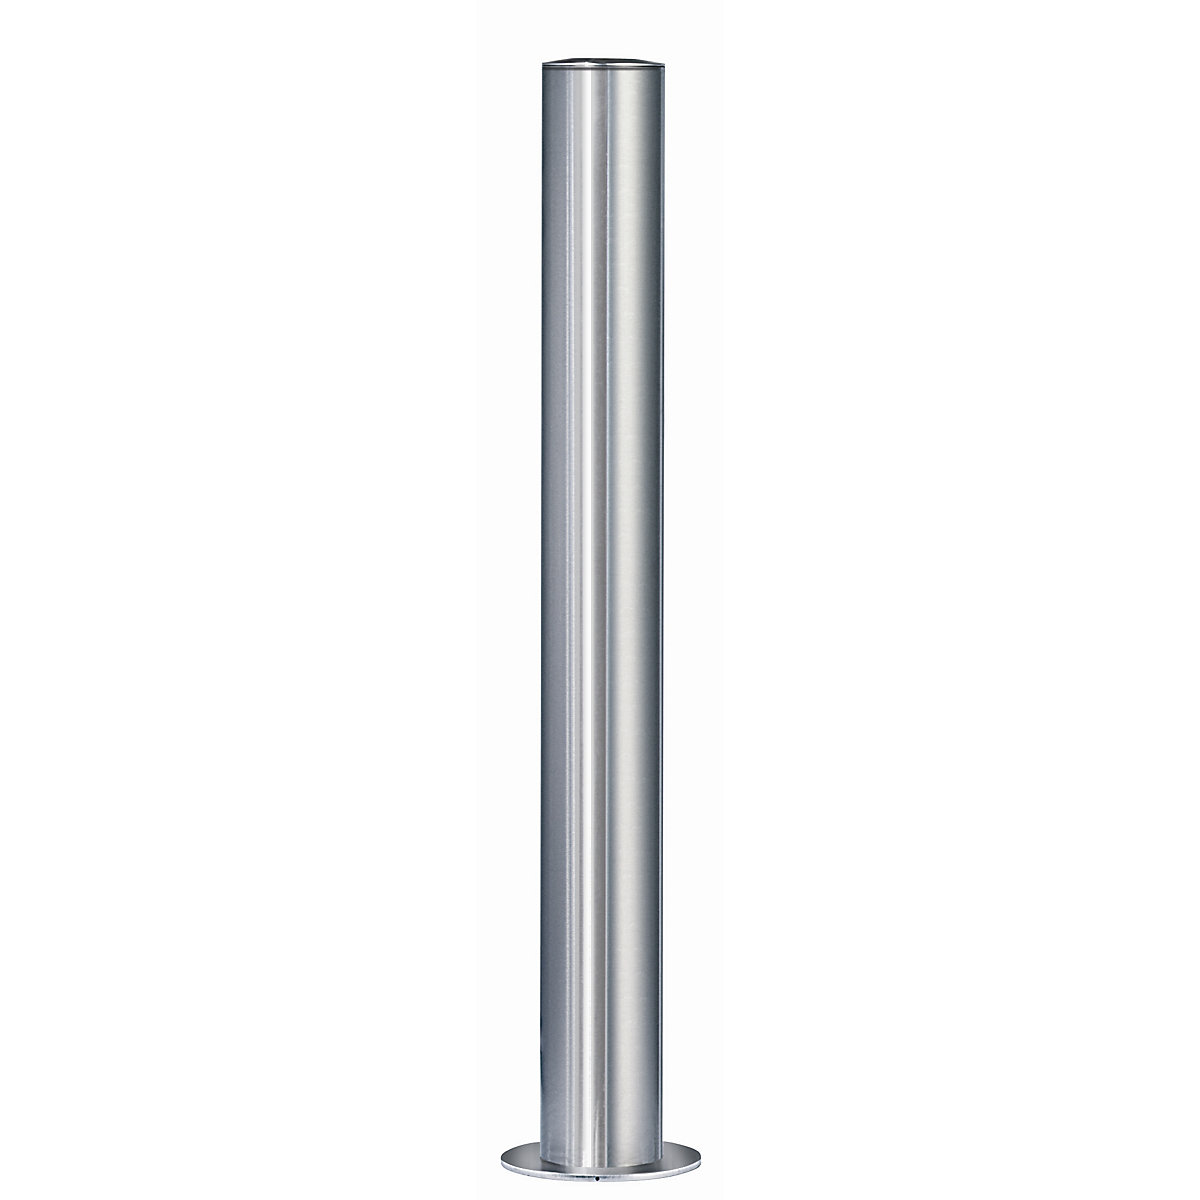 Poste barrera de acero inoxidable, con cabezal plano, funda para encementar, Ø 102 mm, cerradura triangular